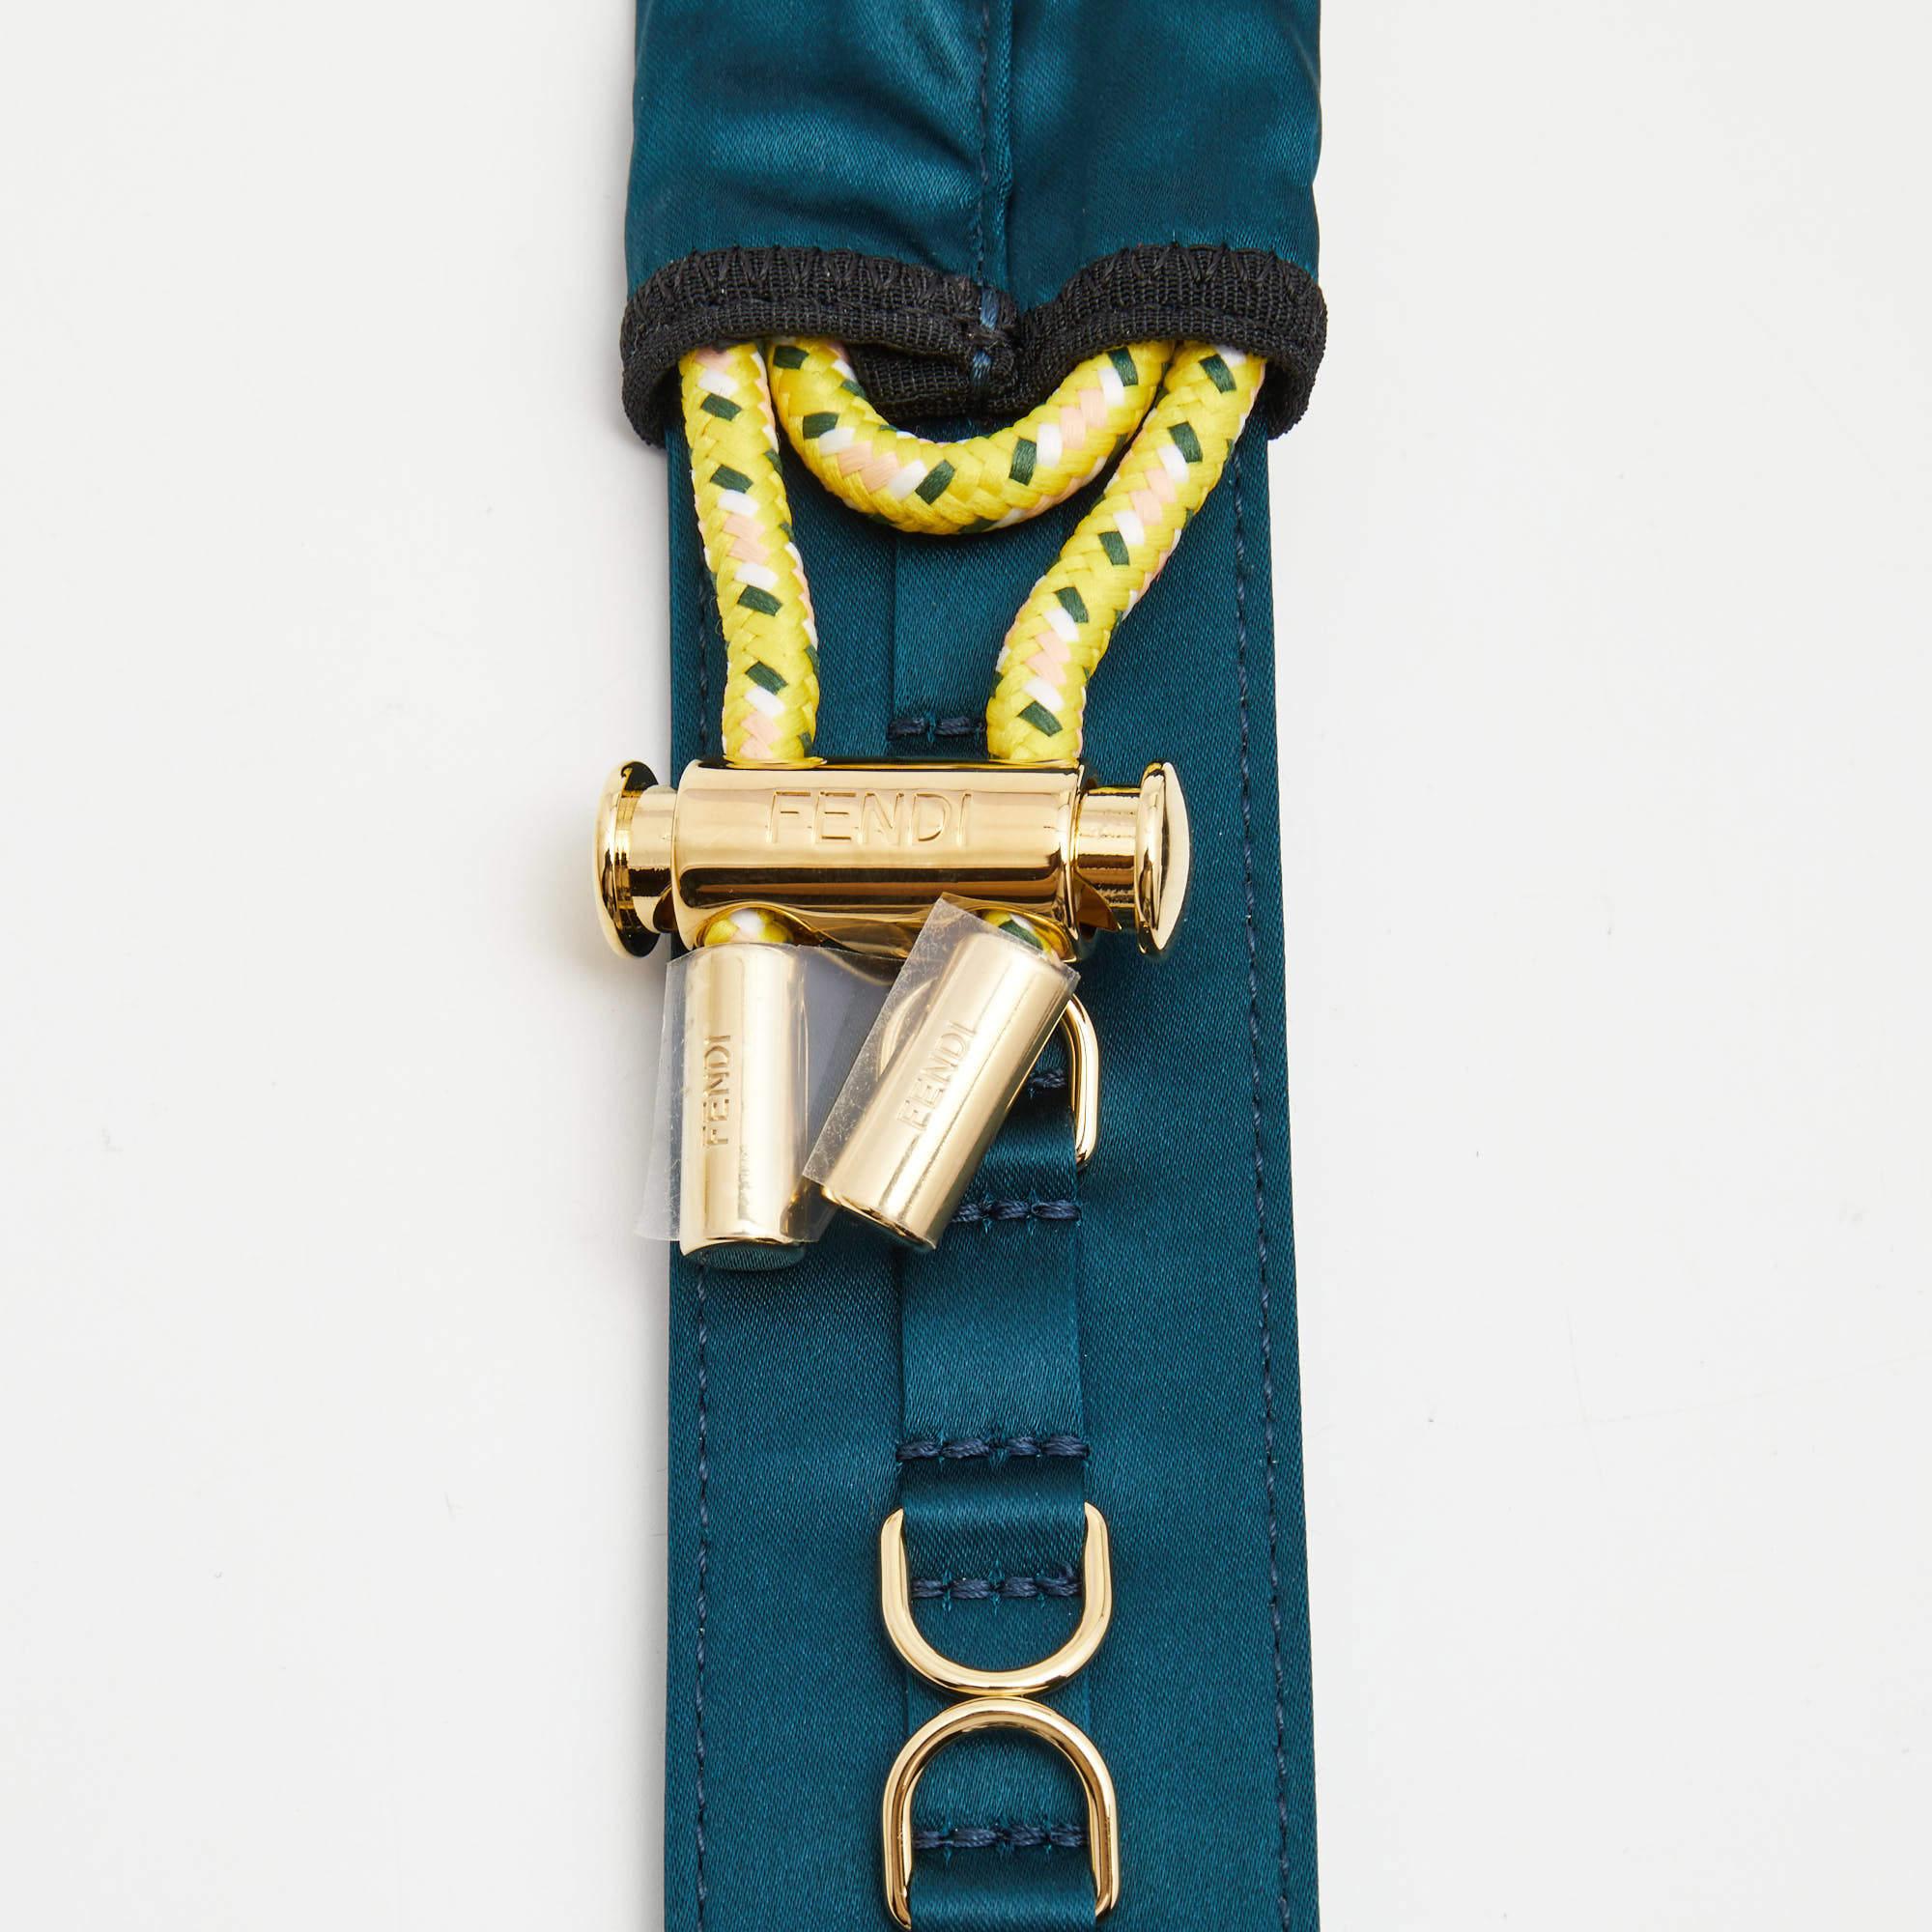 Unterstreichen Sie Ihren Stil mit dem Schulterriemen von Fendi. Dieses exquisite Accessoire aus luxuriösem Satin in einem blaugrünen Farbton verleiht Ihrer Handtasche einen Hauch von Eleganz und Raffinesse und ist damit ein Muss für